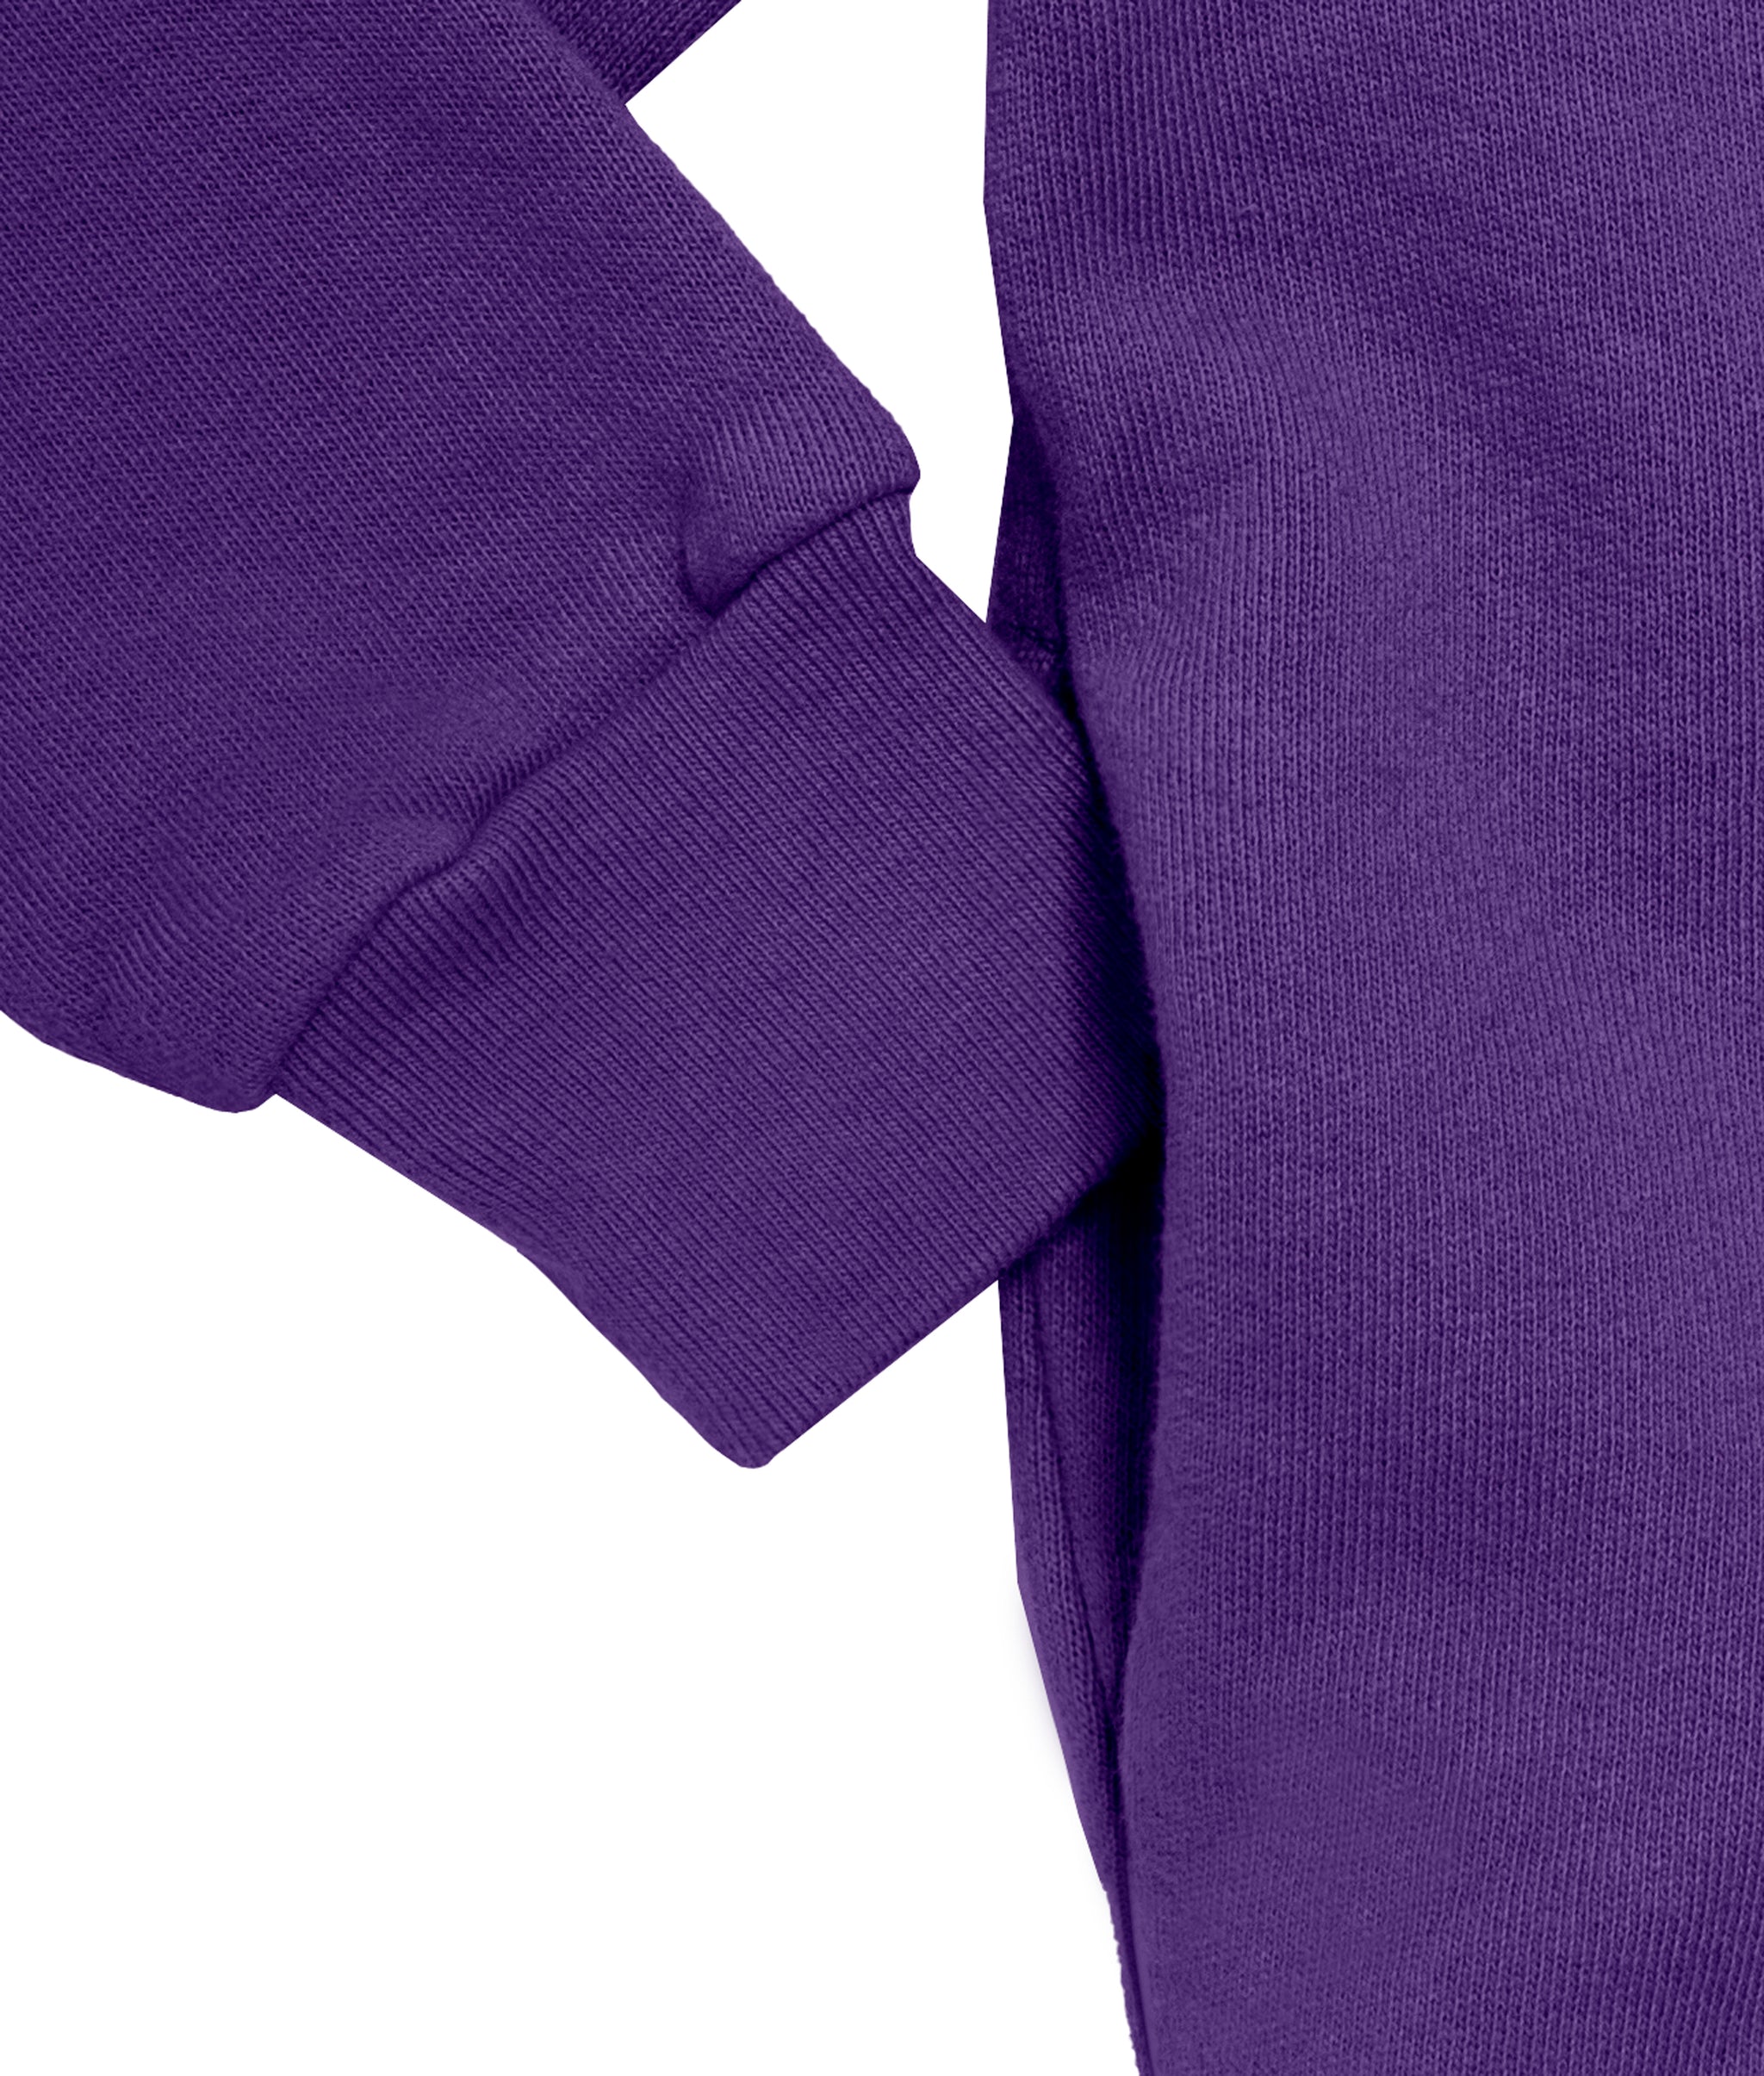 Soft & Cozy 100% Cotton Fleece Zip Hoodie with Inner Pockets